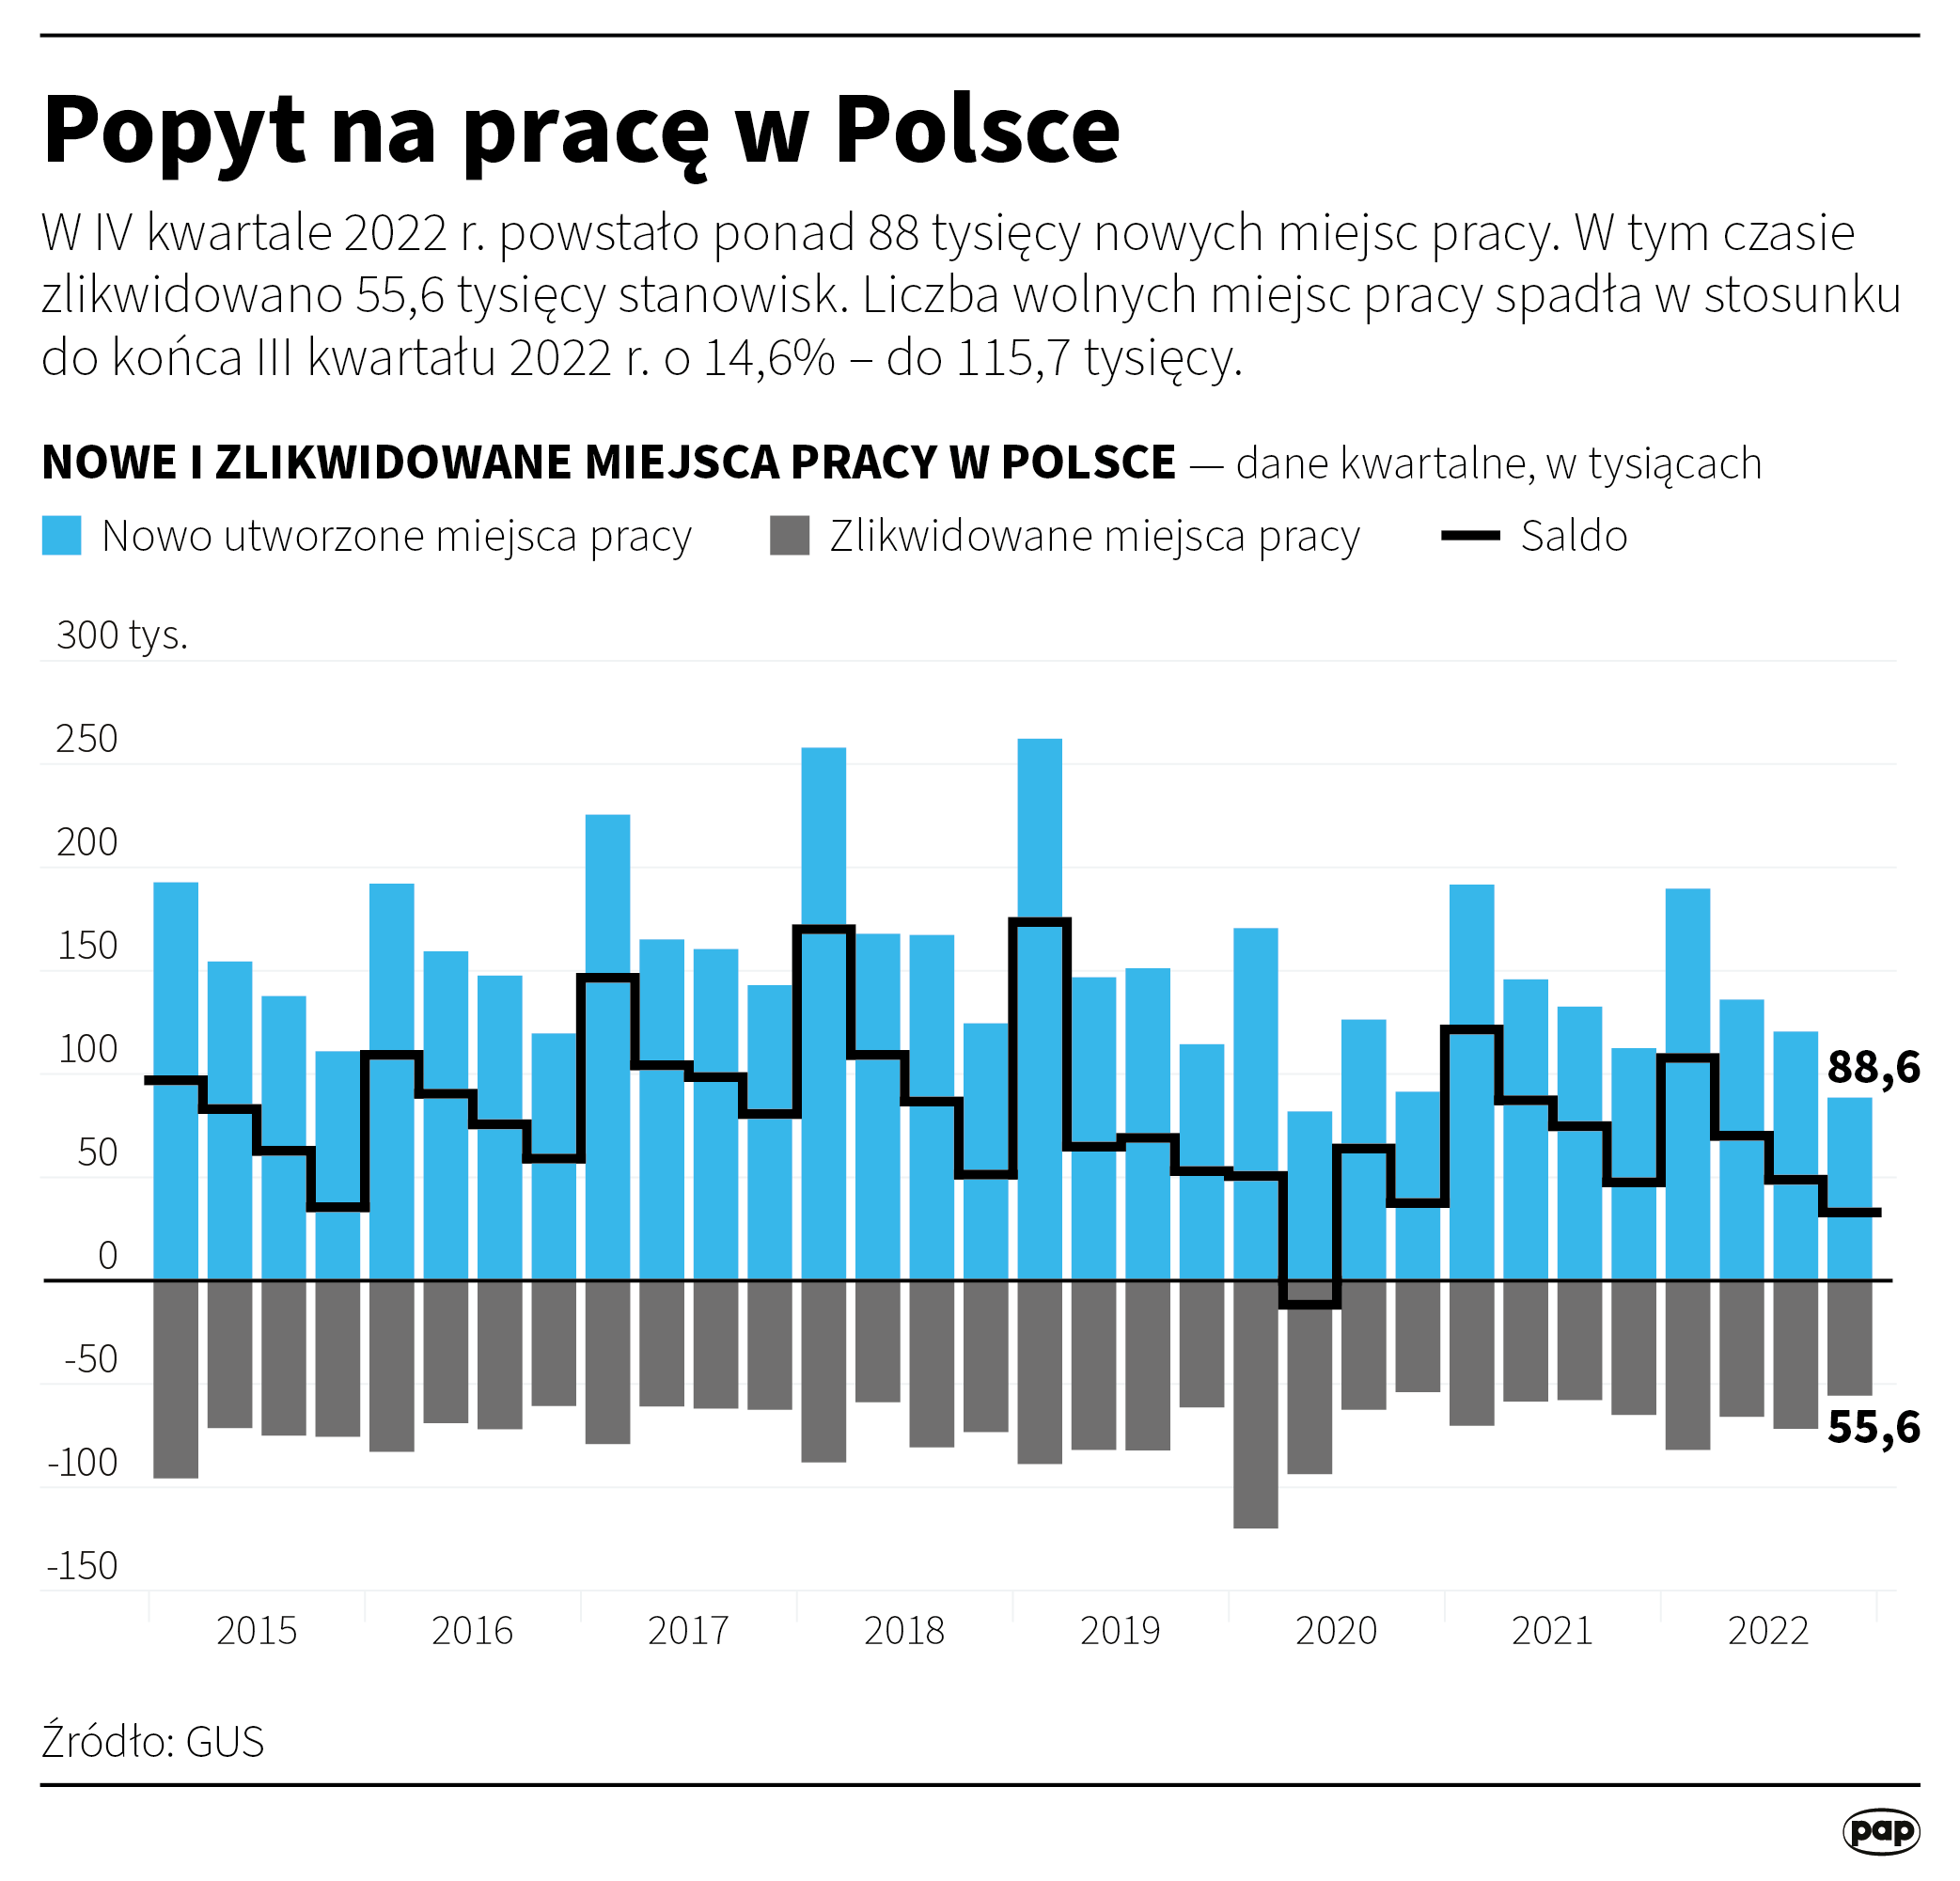 Popyt na pracę w Polsce. Źródło: PAP